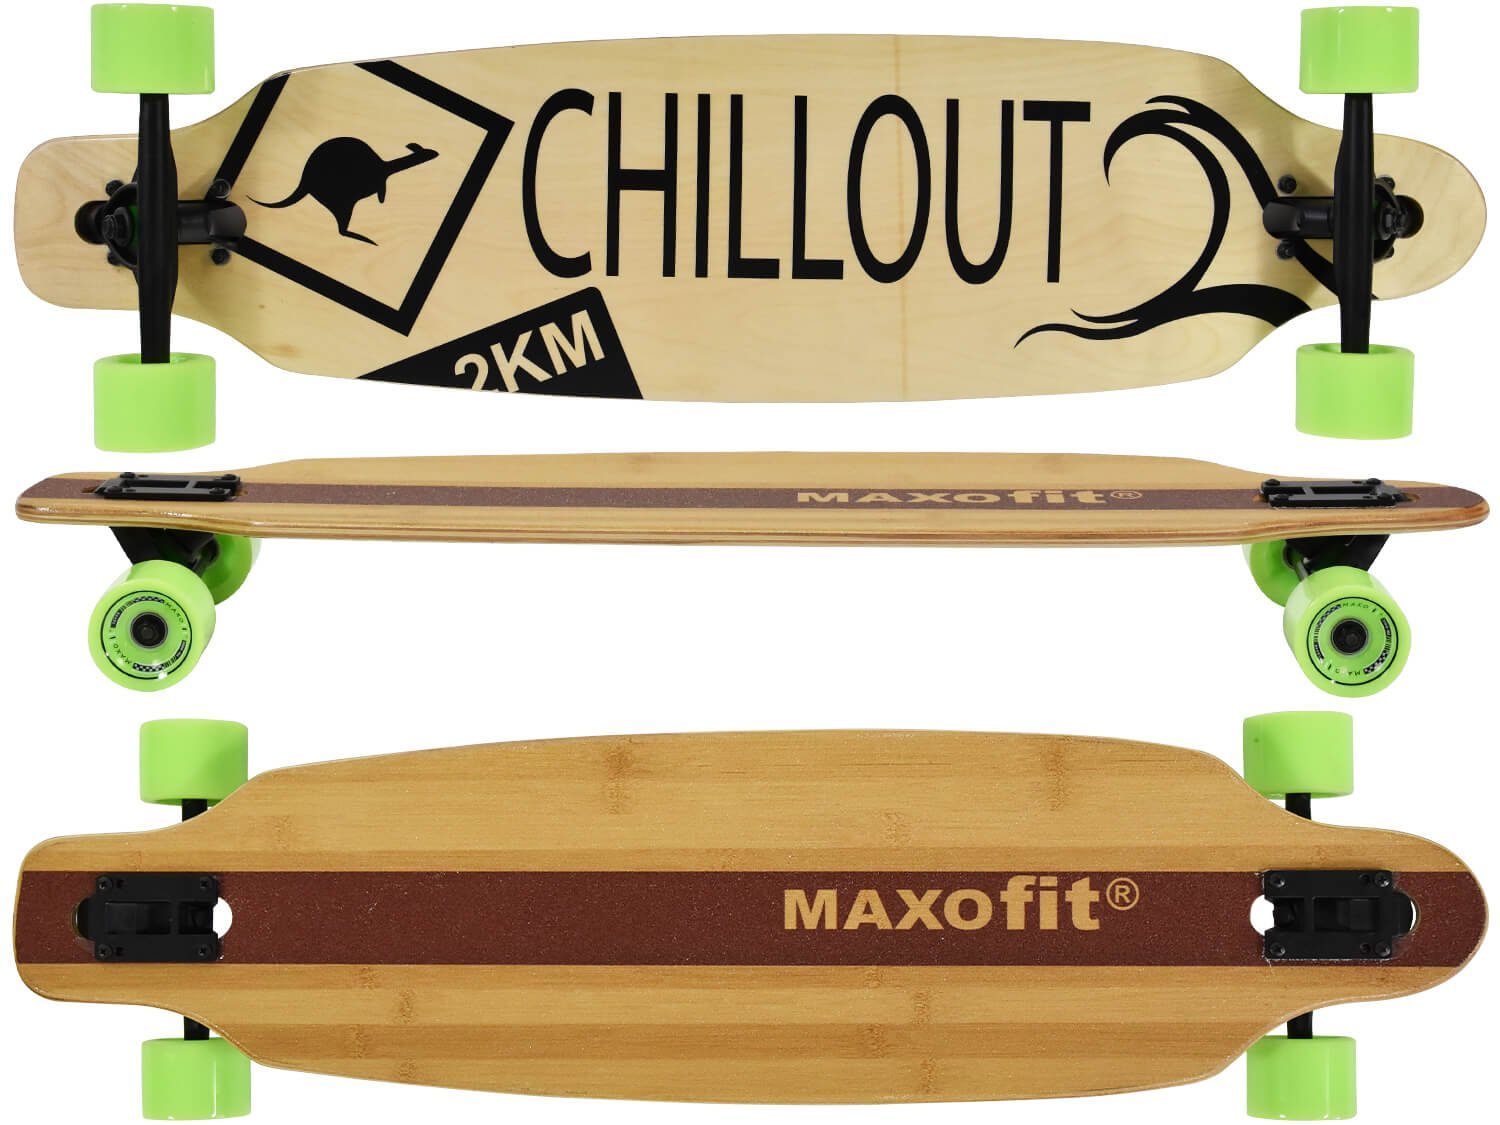 Maxofit Longboard »Chillout No. 19 91,5 cm« kaufen | OTTO